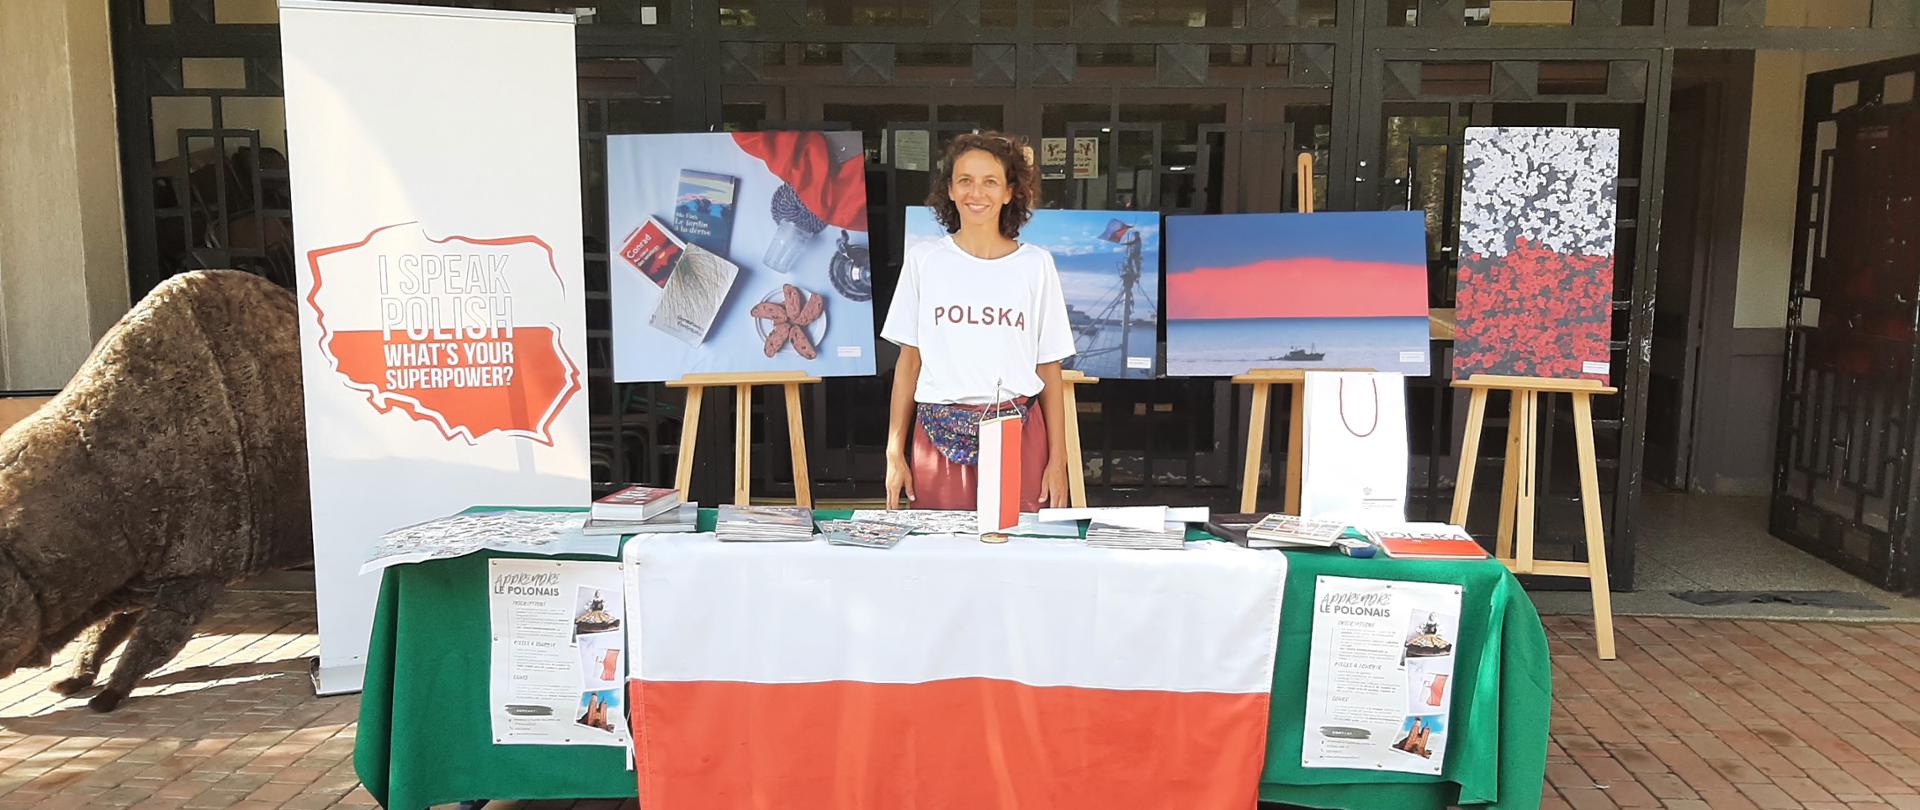 stand de recrutement au cours de polonais a l' Universite Mohammed V Rabat